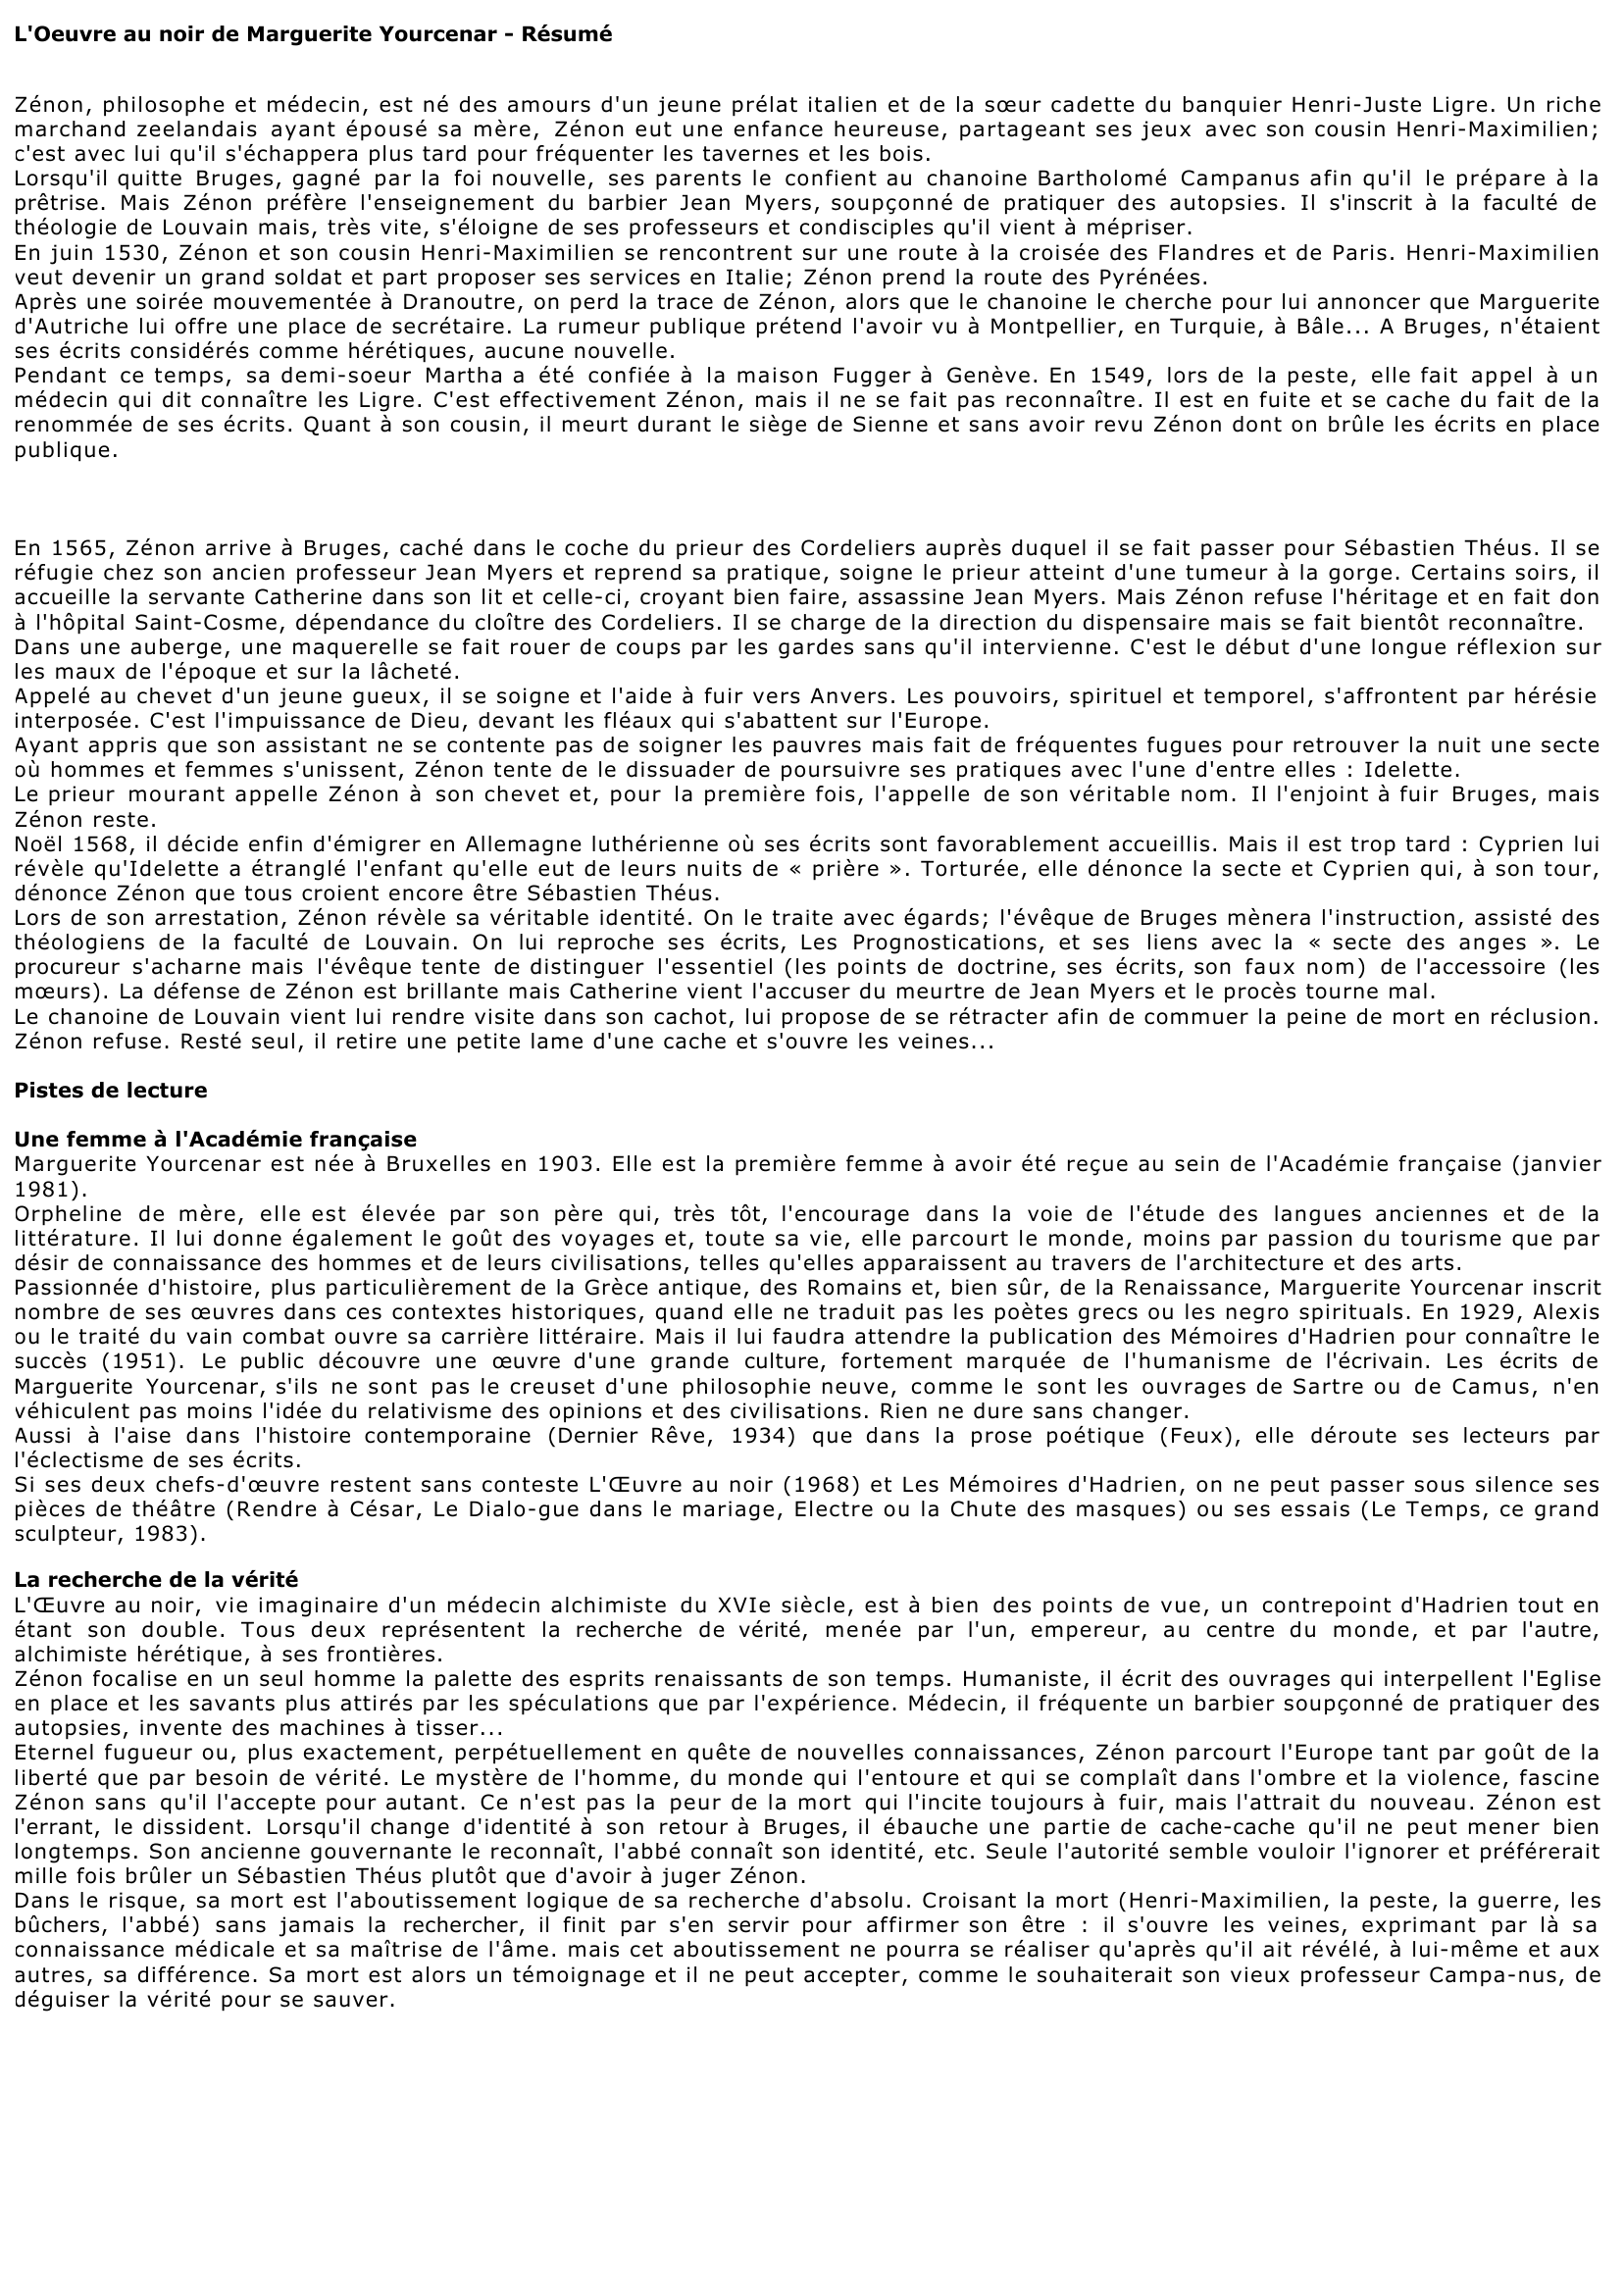 Prévisualisation du document L'Oeuvre au noir (résumé) de Marguerite Yourcenar